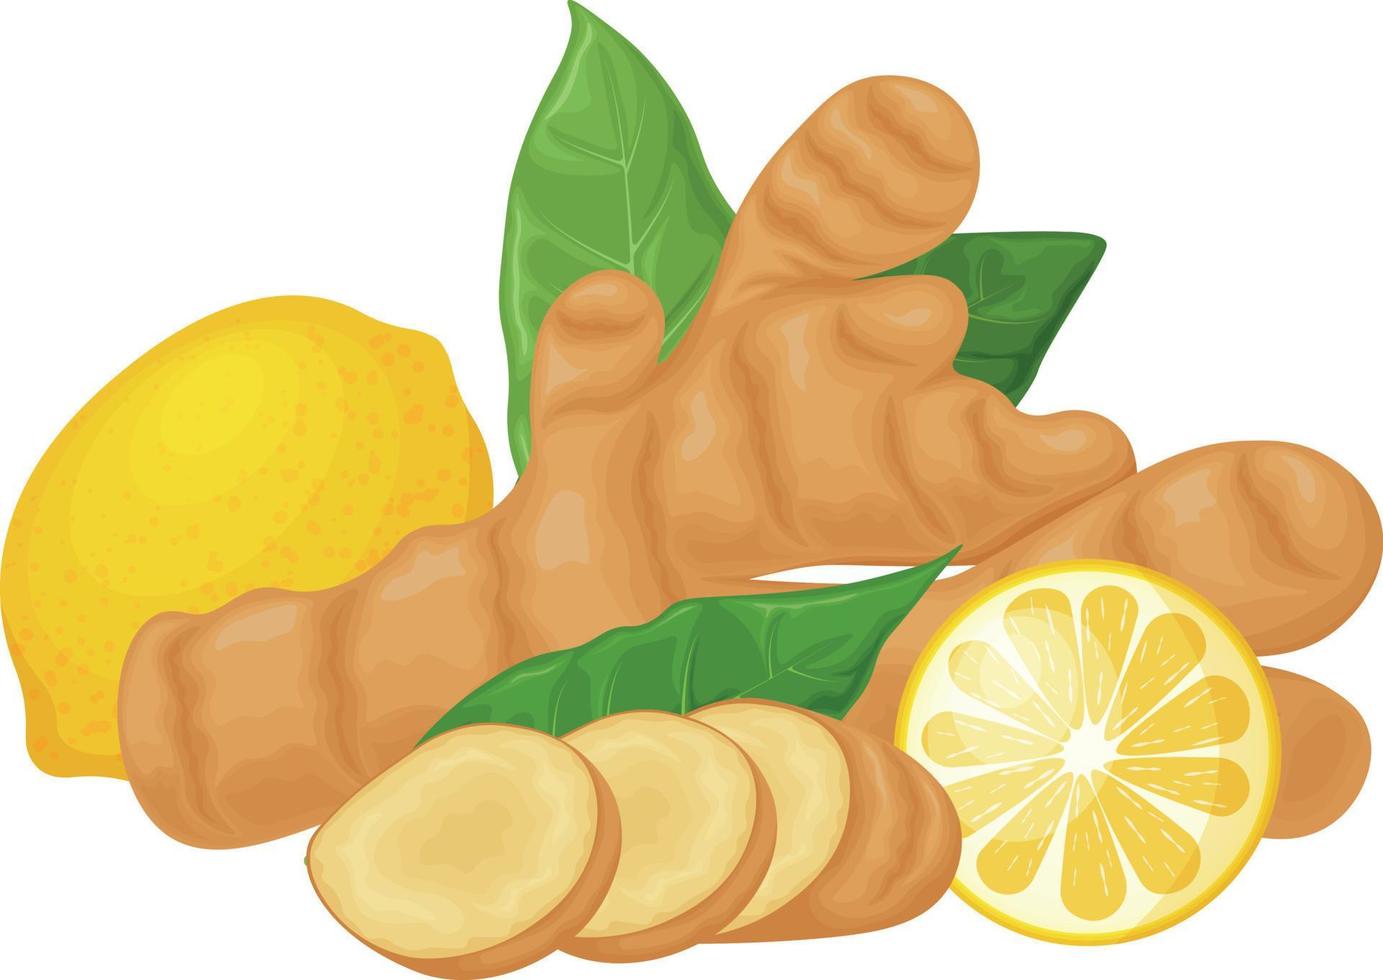 ingefära. vektor bild av ingefära med citron- och löv. medicinsk växt i tecknad serie stil. isolerat på en vit bakgrund